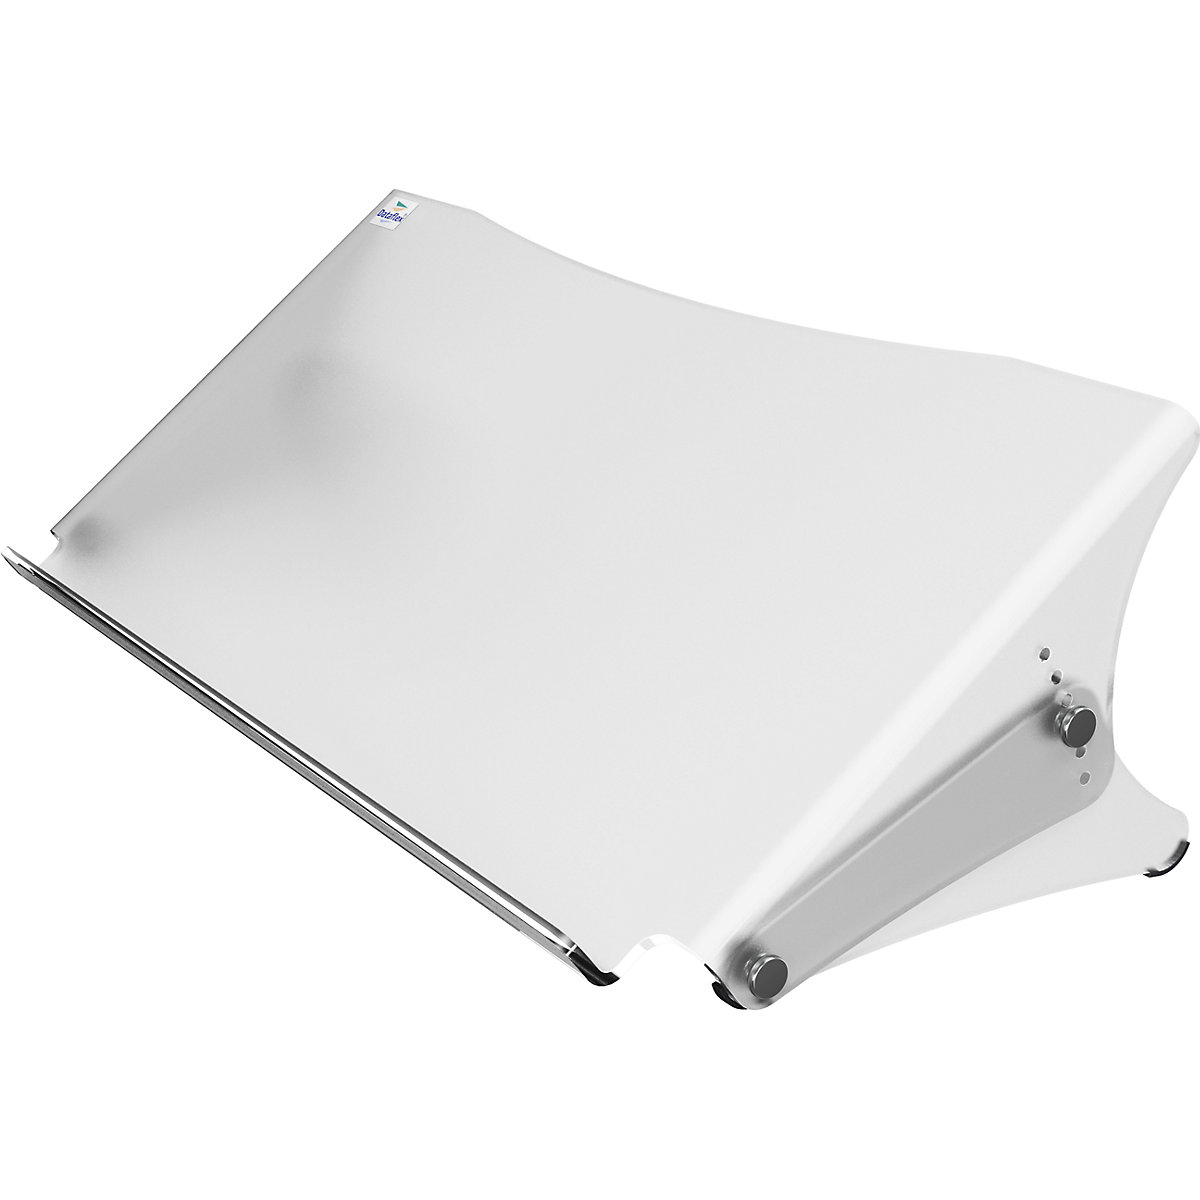 Porte-documents ERGODOC® – Dataflex, hauteur réglable 136 – 206 mm, transparent mat-4